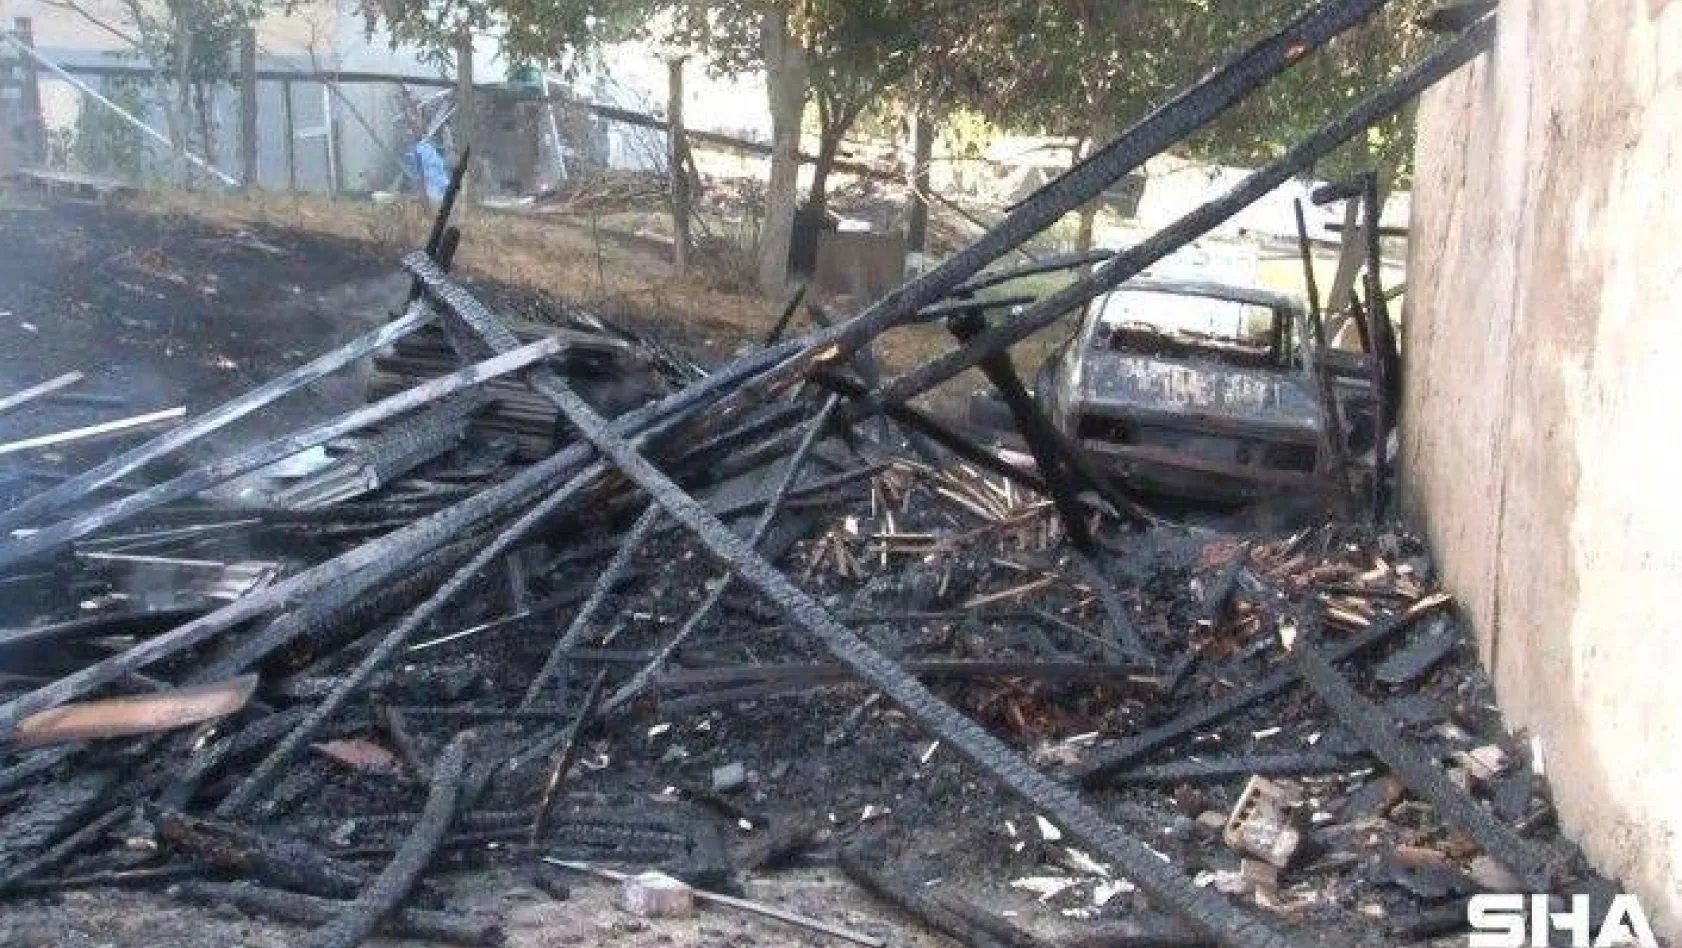 Arnavutköy'de içerisinde otomobil bulunan gecekondu alev alev yandı